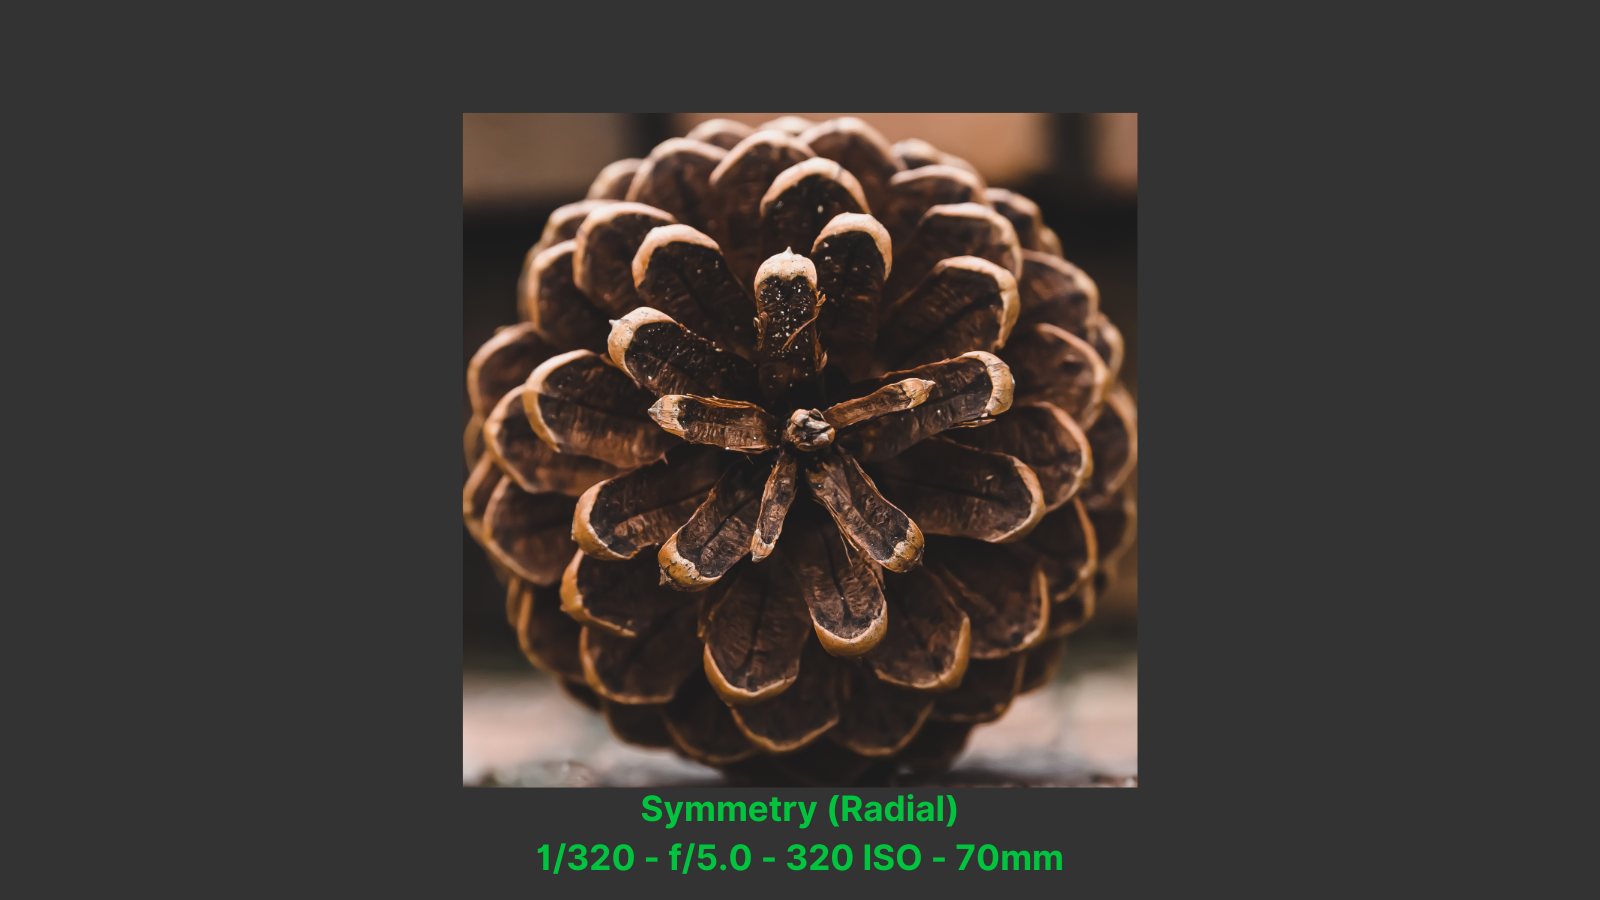 Radiay Symmetry Pinecone